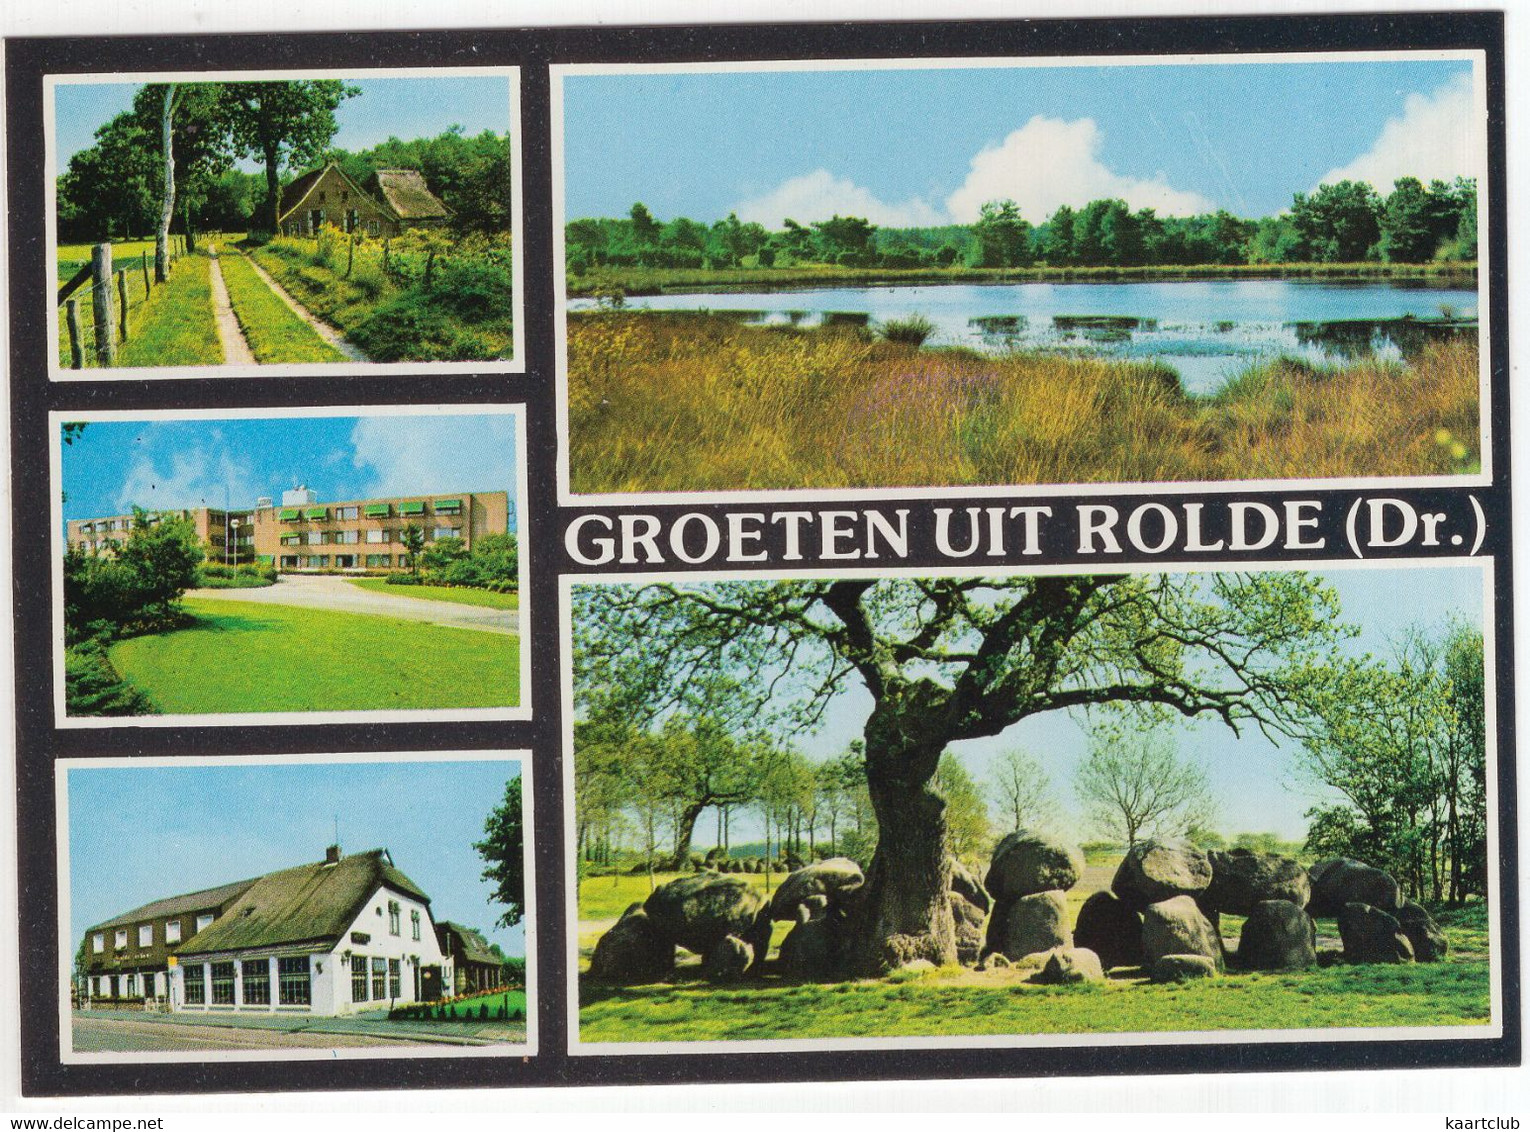 Groeten Uit Rolde - (Drenthe, Nederland/Holland) - Nr. L 6600 - O.a Hunebed / Dolmen - Rolde